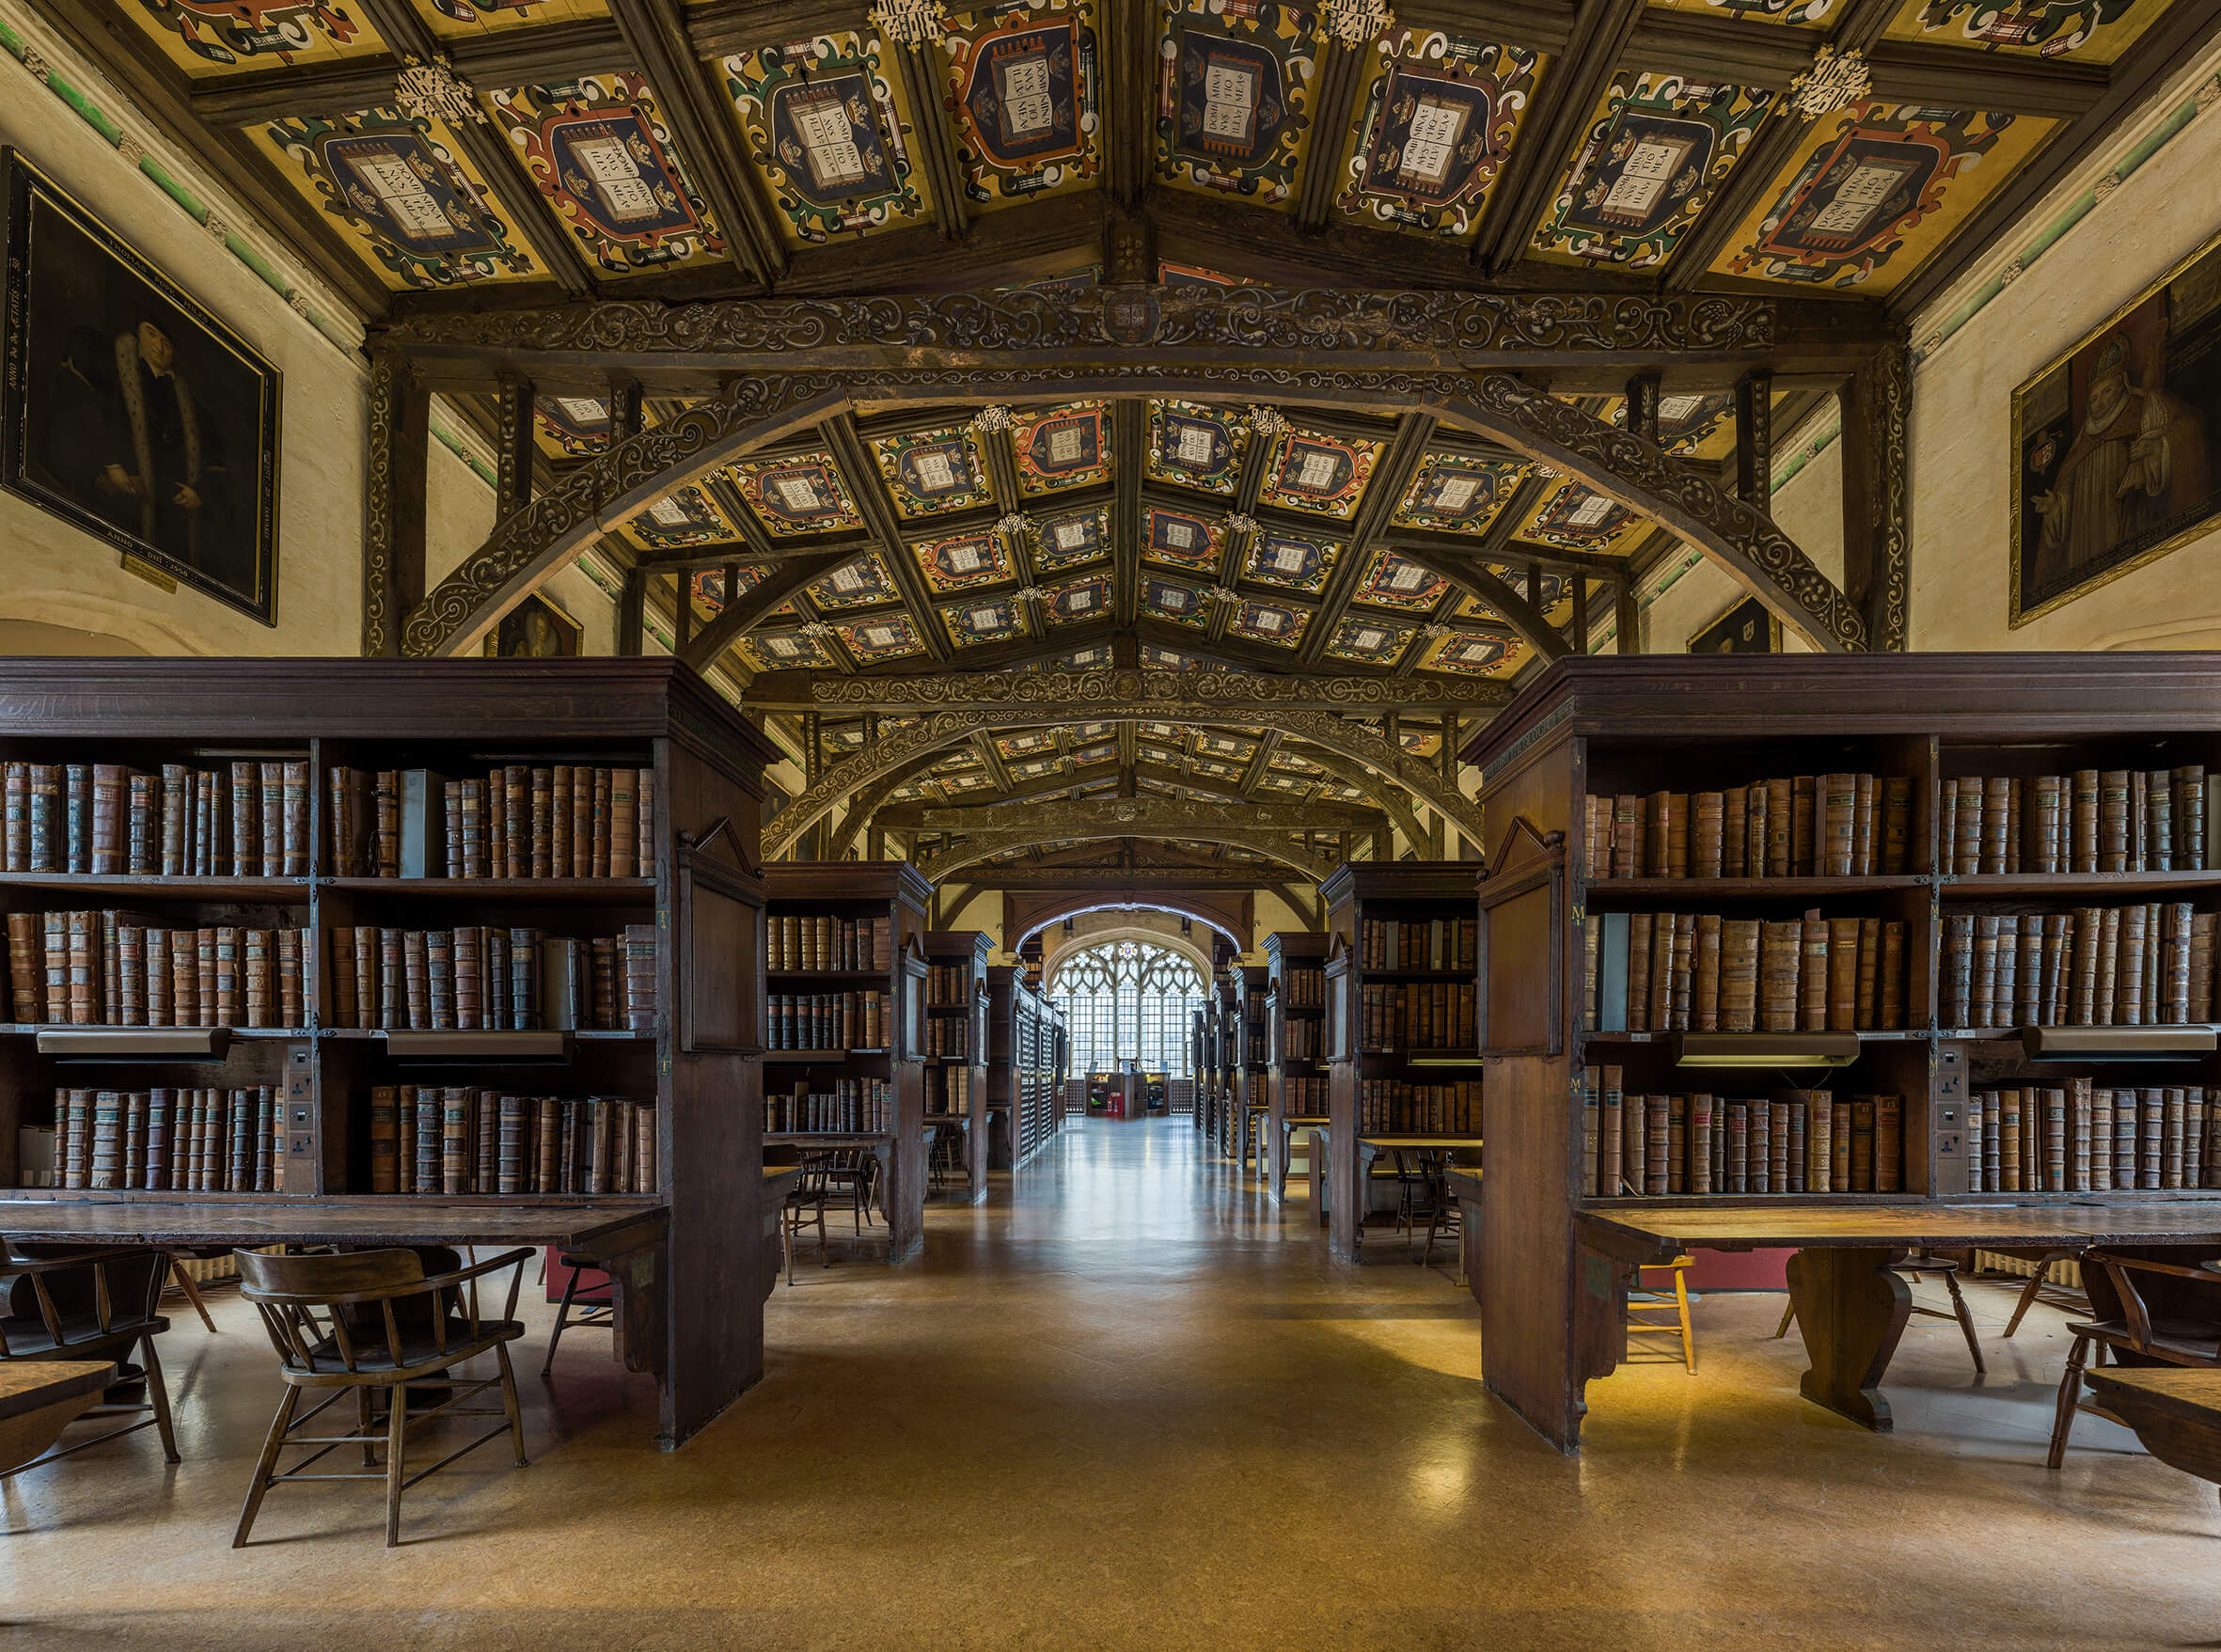 Compiled library. Оксфорд университет Бодлианская библиотека. Библиотека Хогвартса Бодлианская библиотека Оксфорд. Бодлианская библиотека Оксфордского университета (Оксфорд, 1602). Бодлианская библиотеки Оксфорда,  Великобритания.